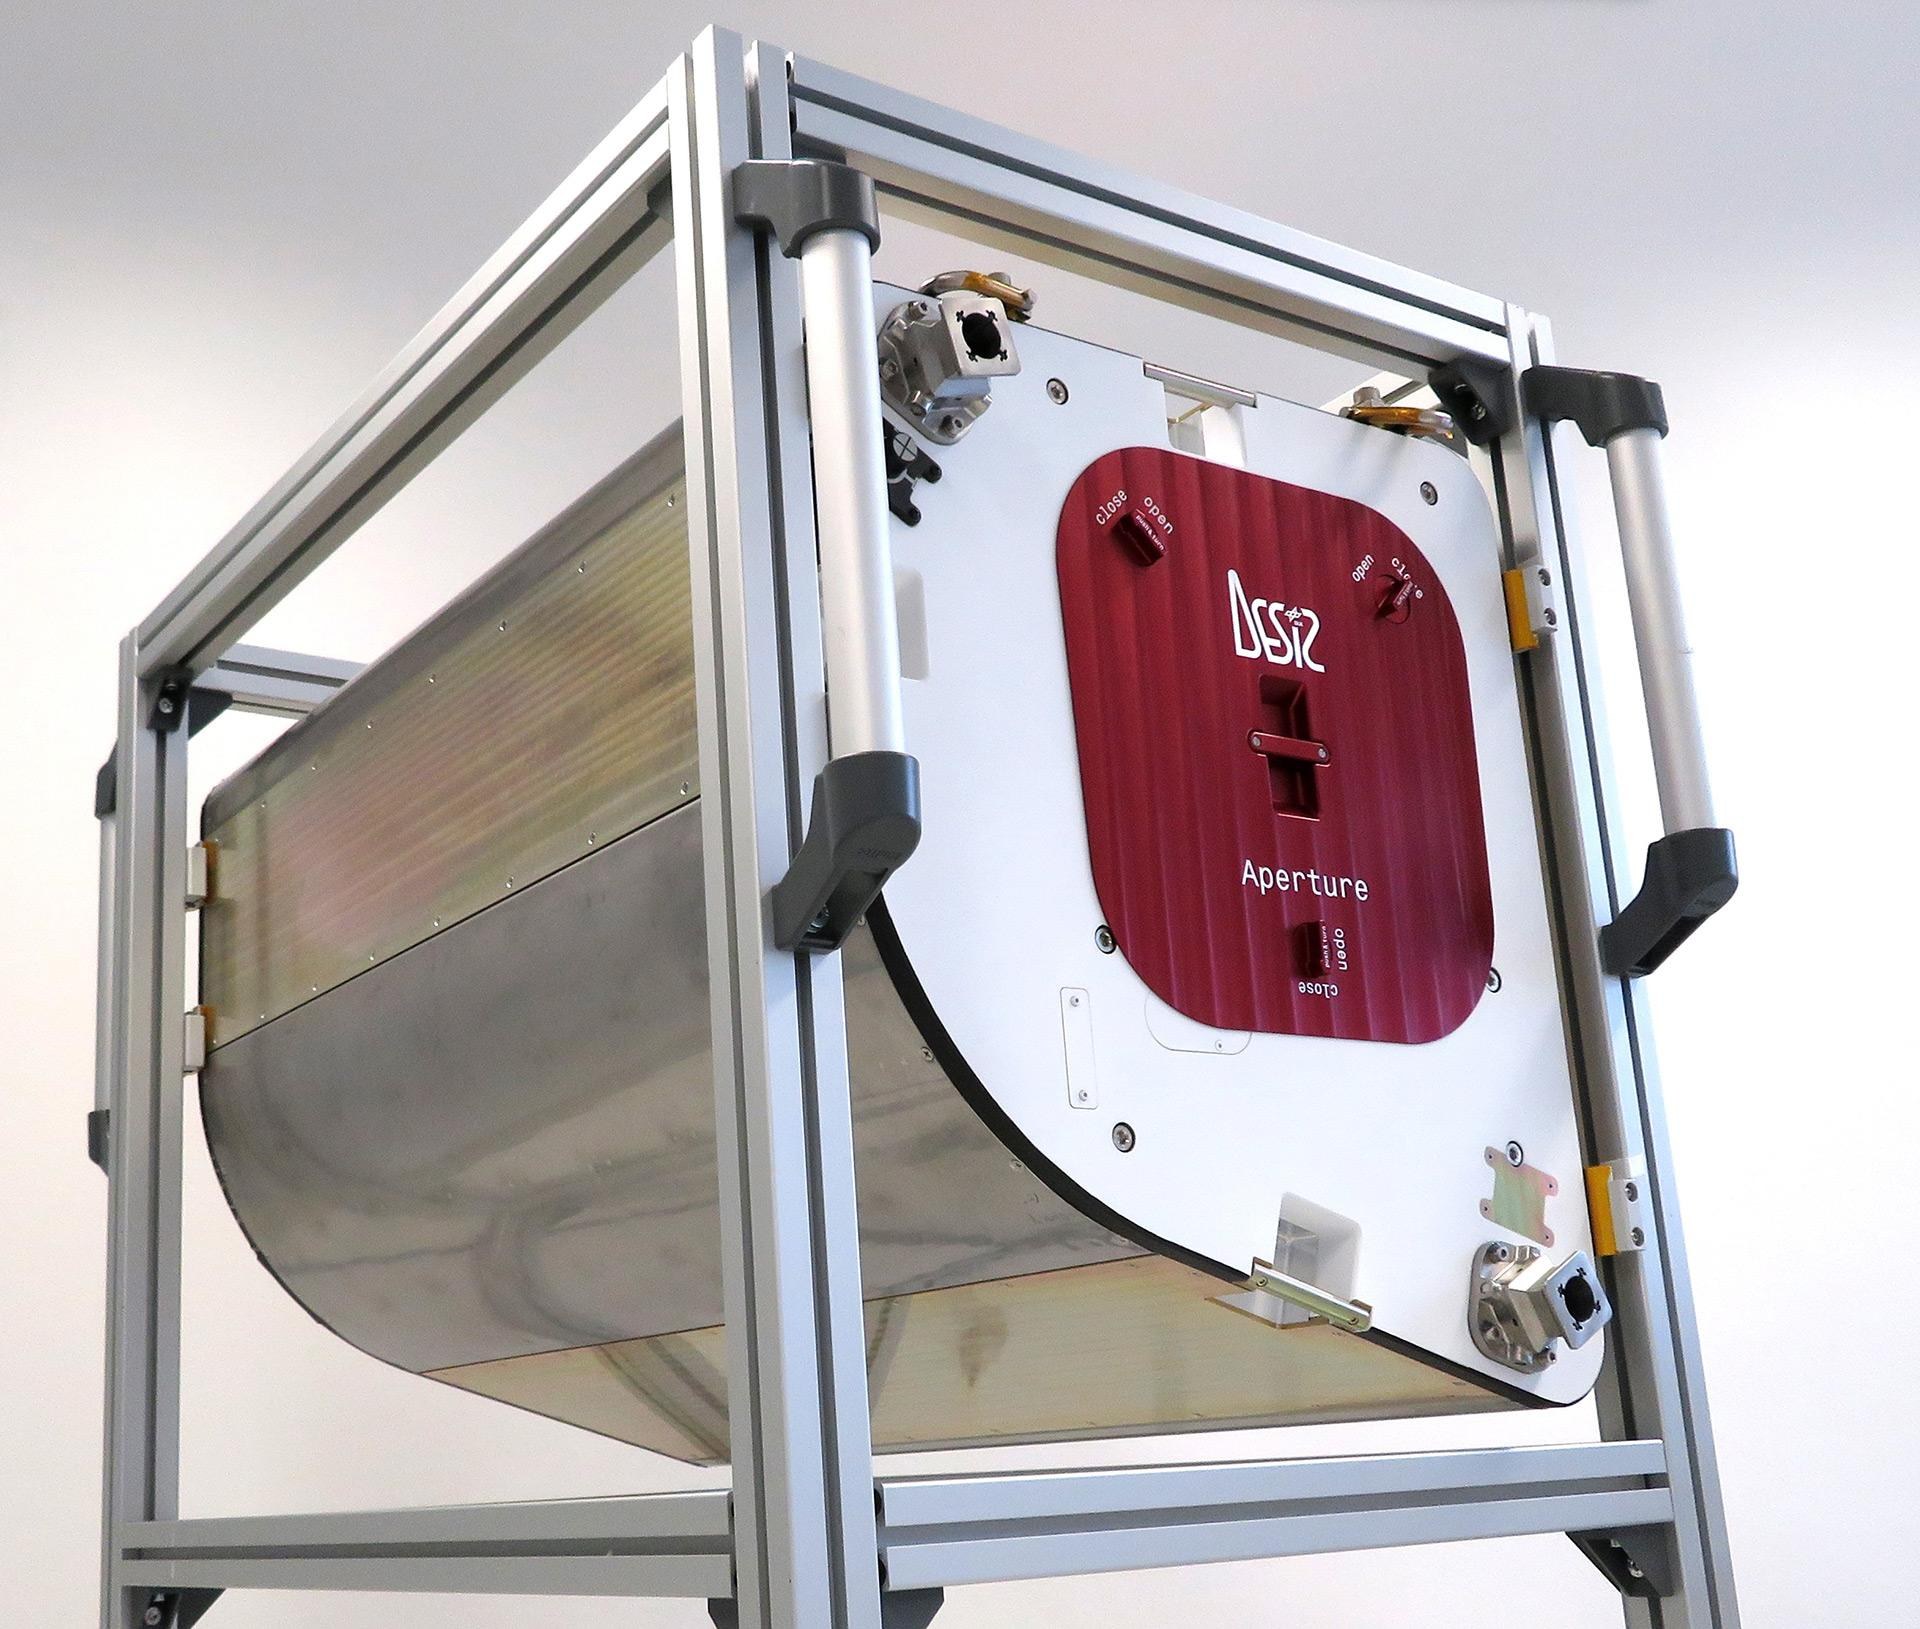 DLR Earth Sensing Imaging Spectrometer (DESIS)